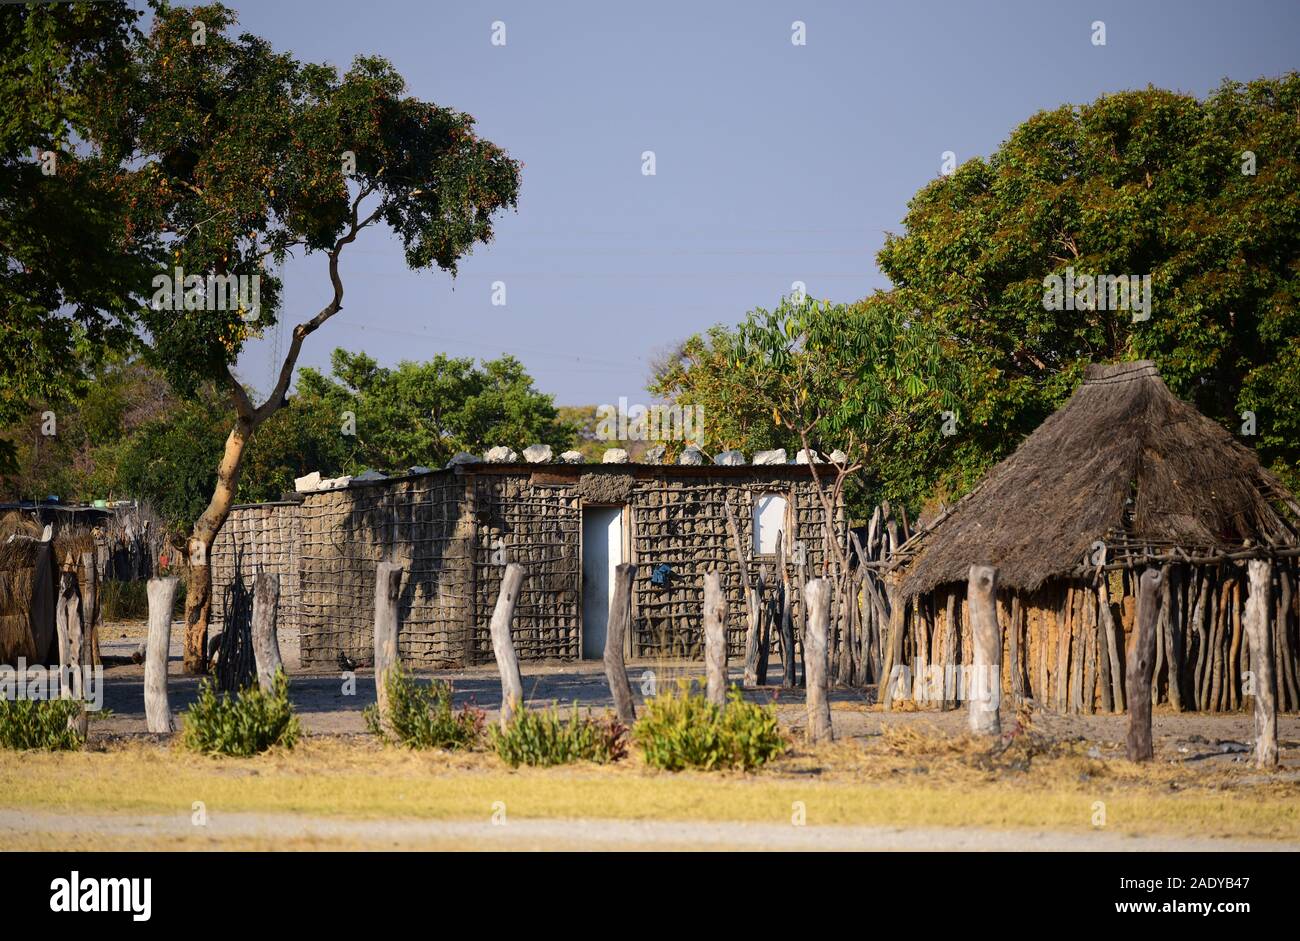 Traditionelle afrikanische Haus aus Lehm. Nördlichen Namibia Stockfoto